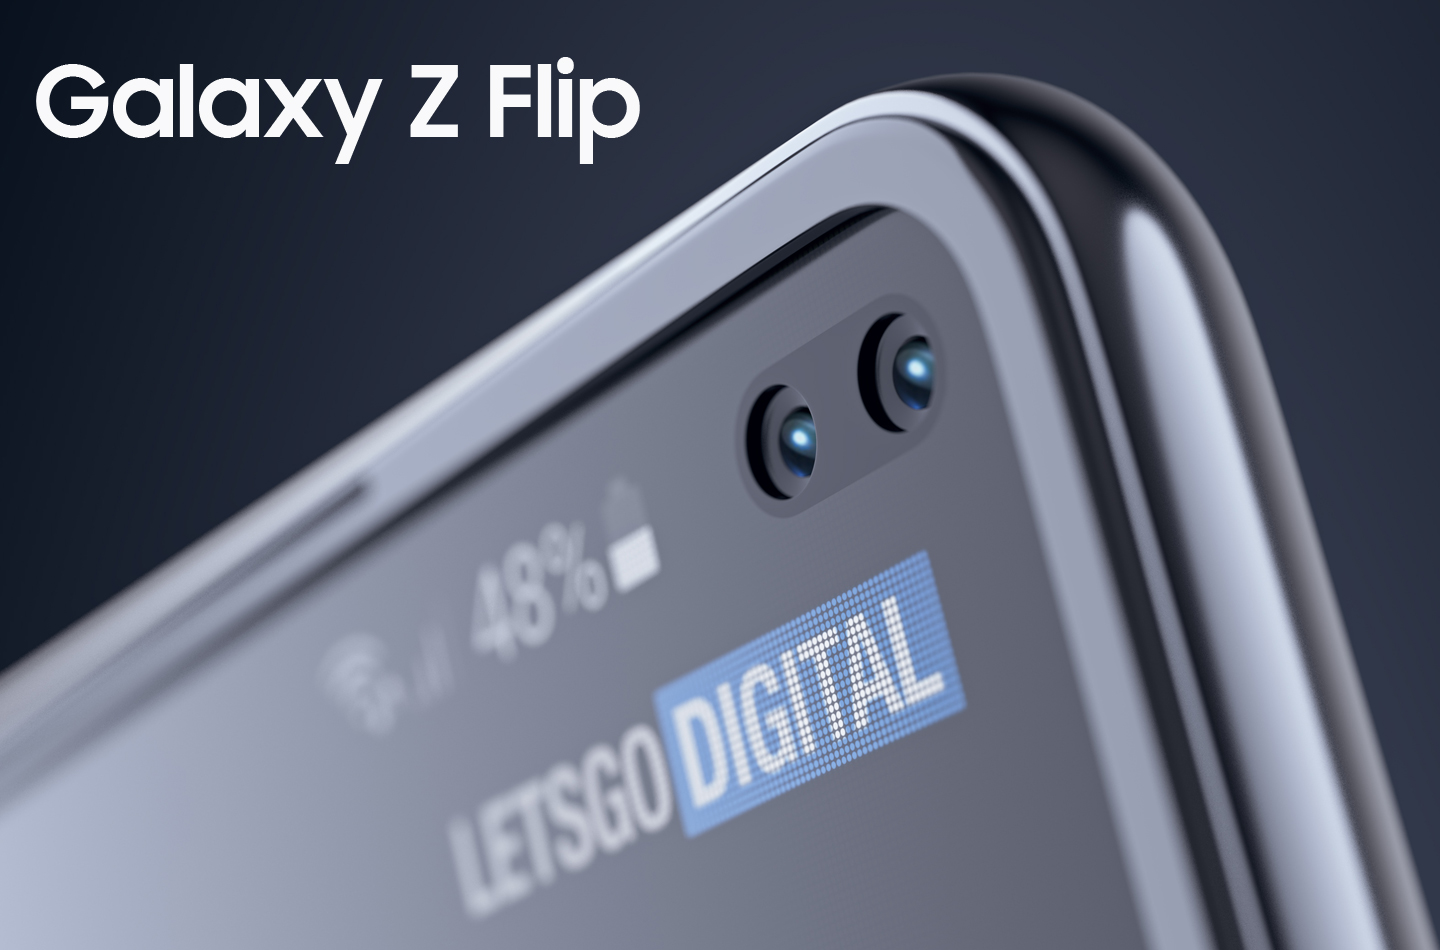 Samsung hat mit dem Galaxy Z Flip ein Smartphone vorgestellt, dessen Bildschirm sich in zwei Richtungen falten lässt